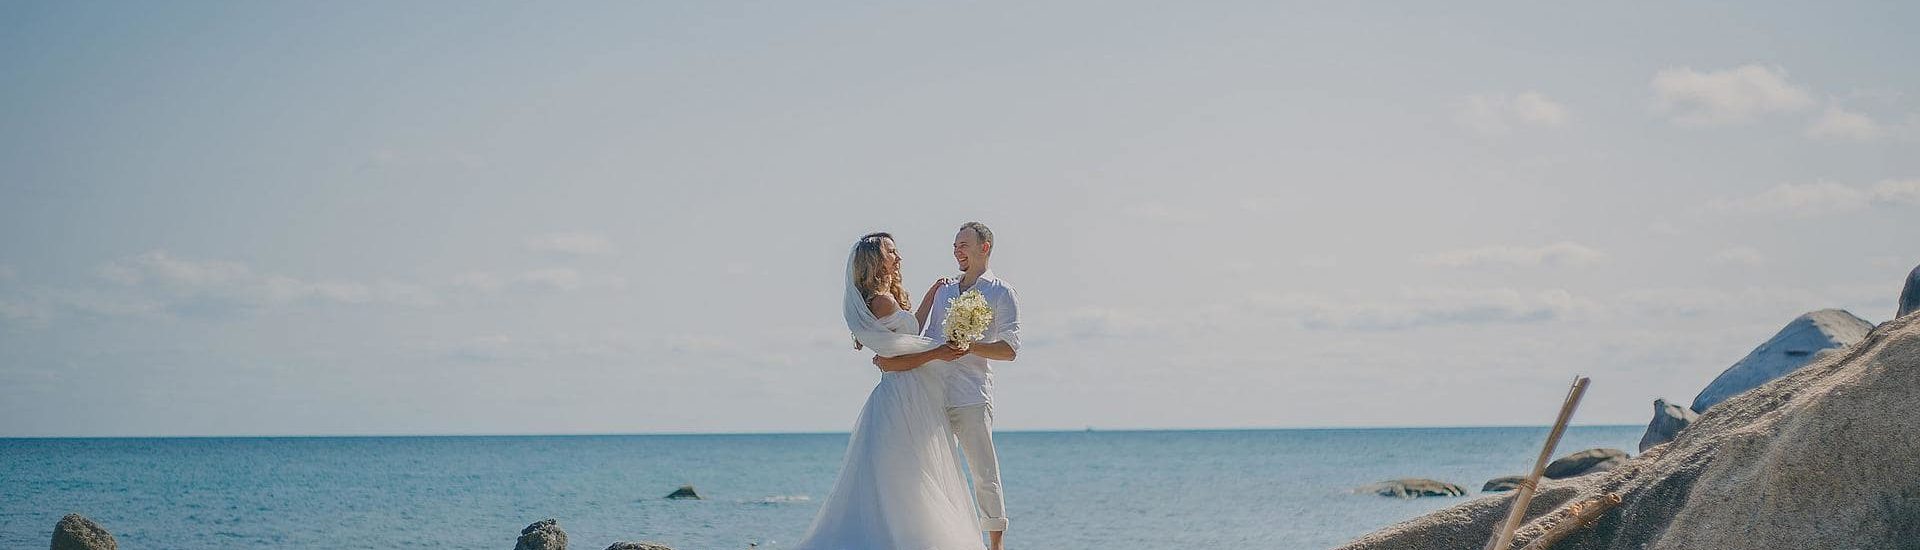 Svatba u moře